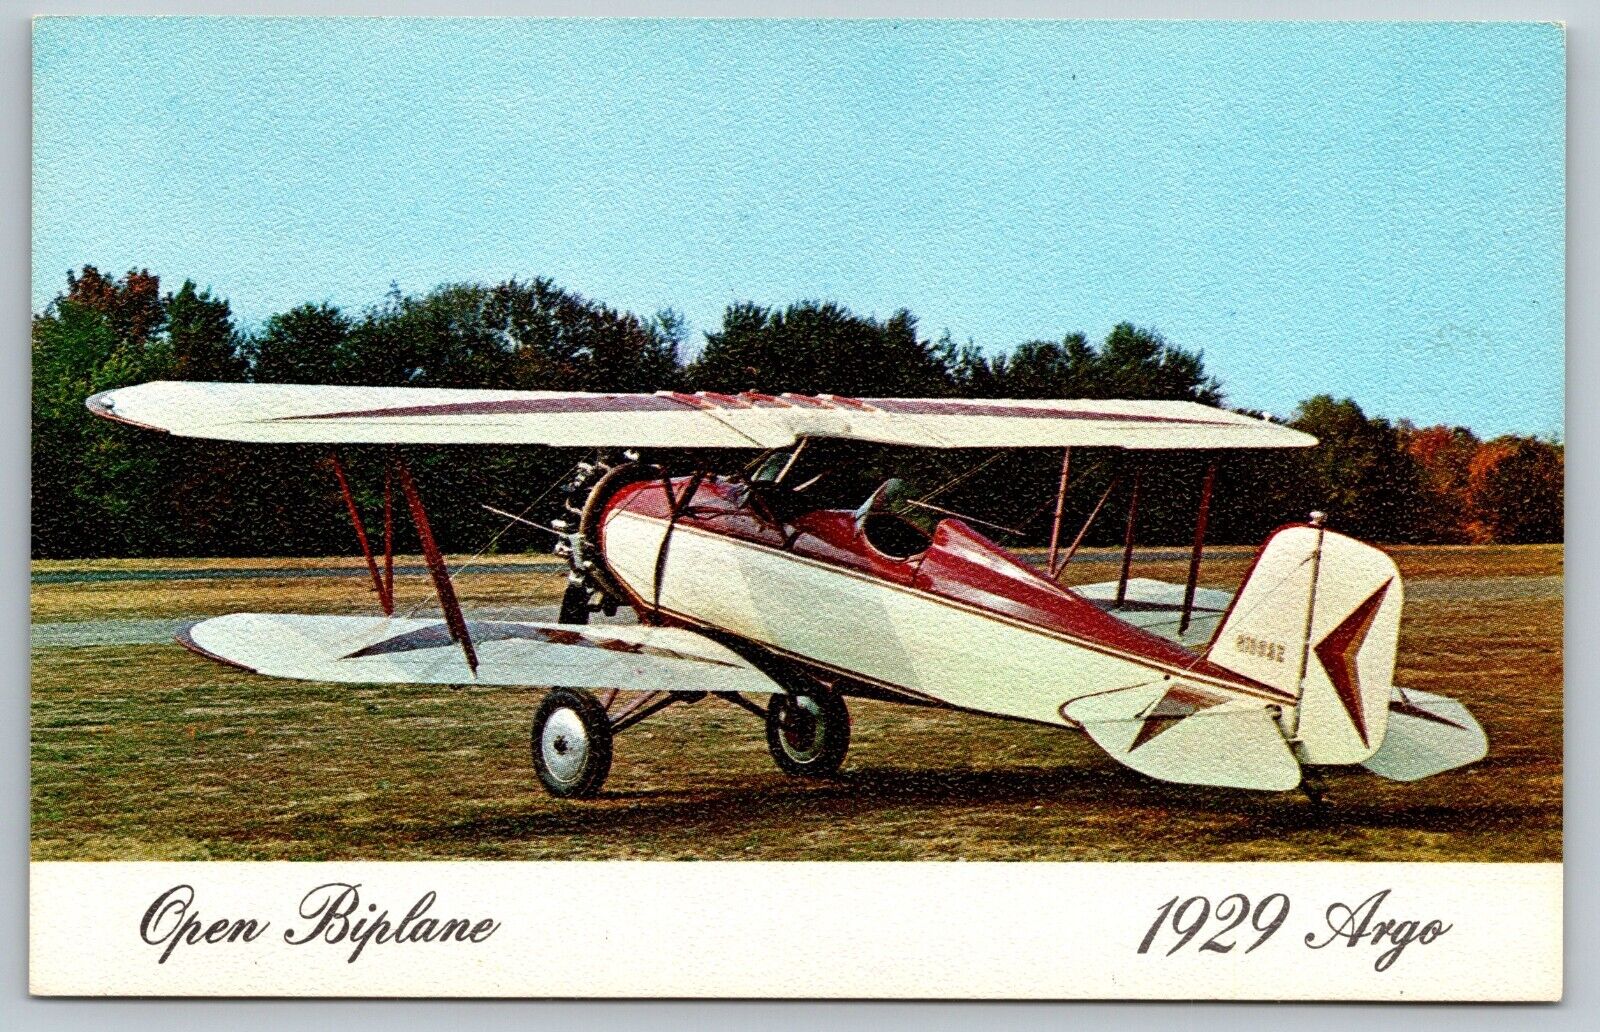 VIntage Airline Airplane Postcard - 1929 Argo - Open Biplane